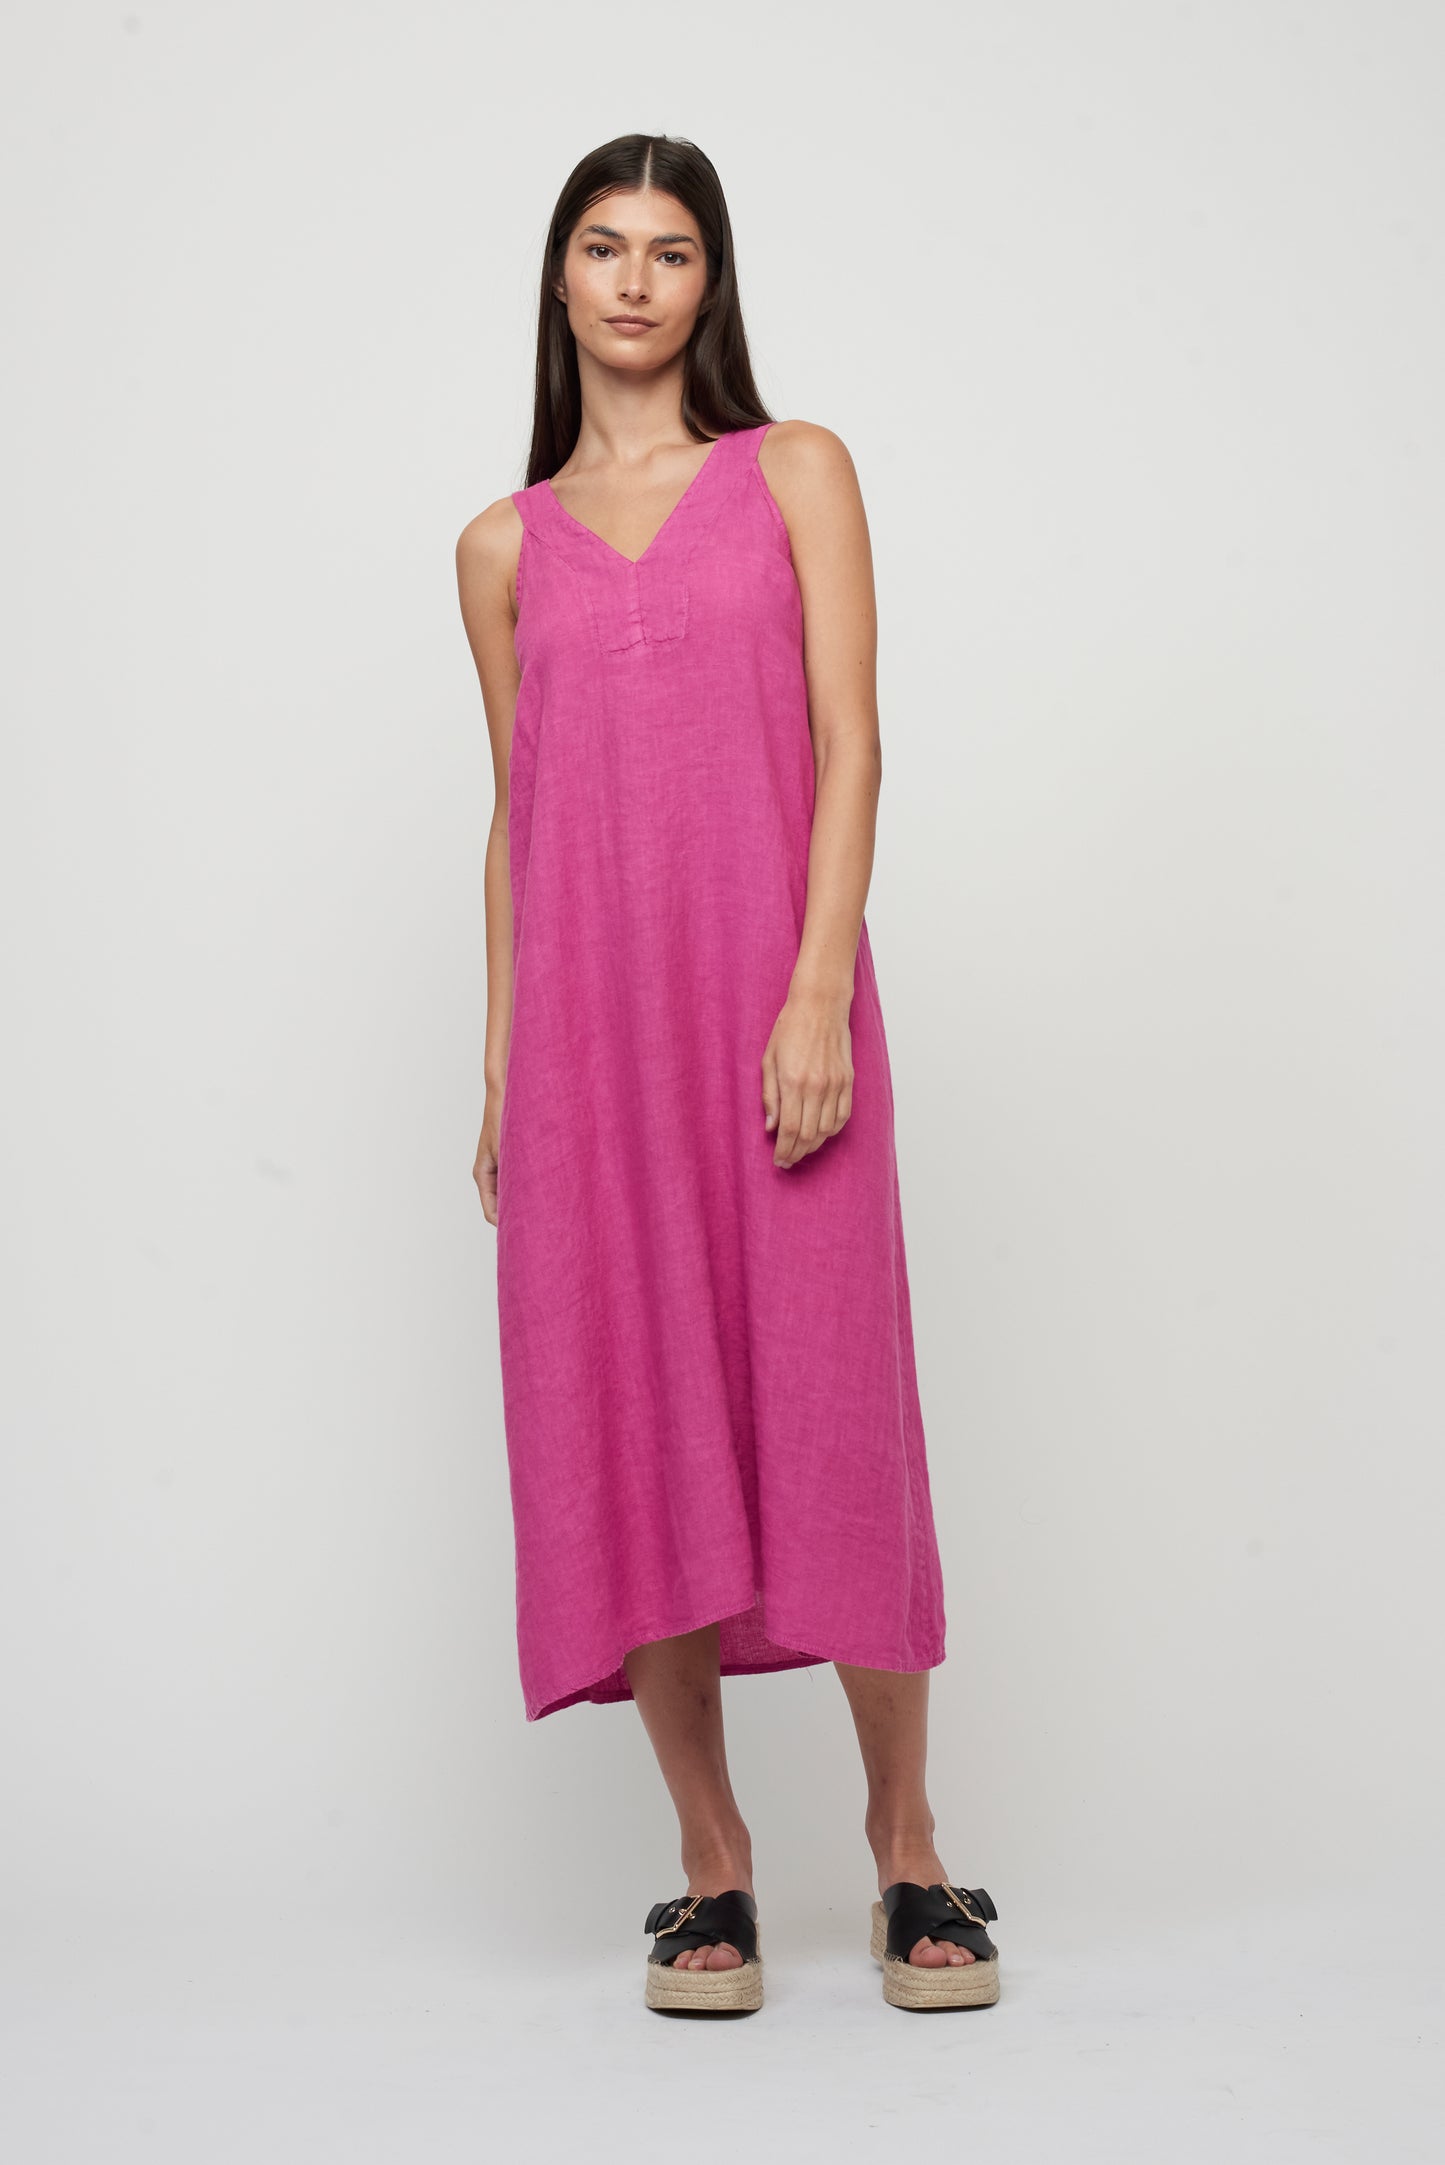 Pistache Pink V-Neck Dress